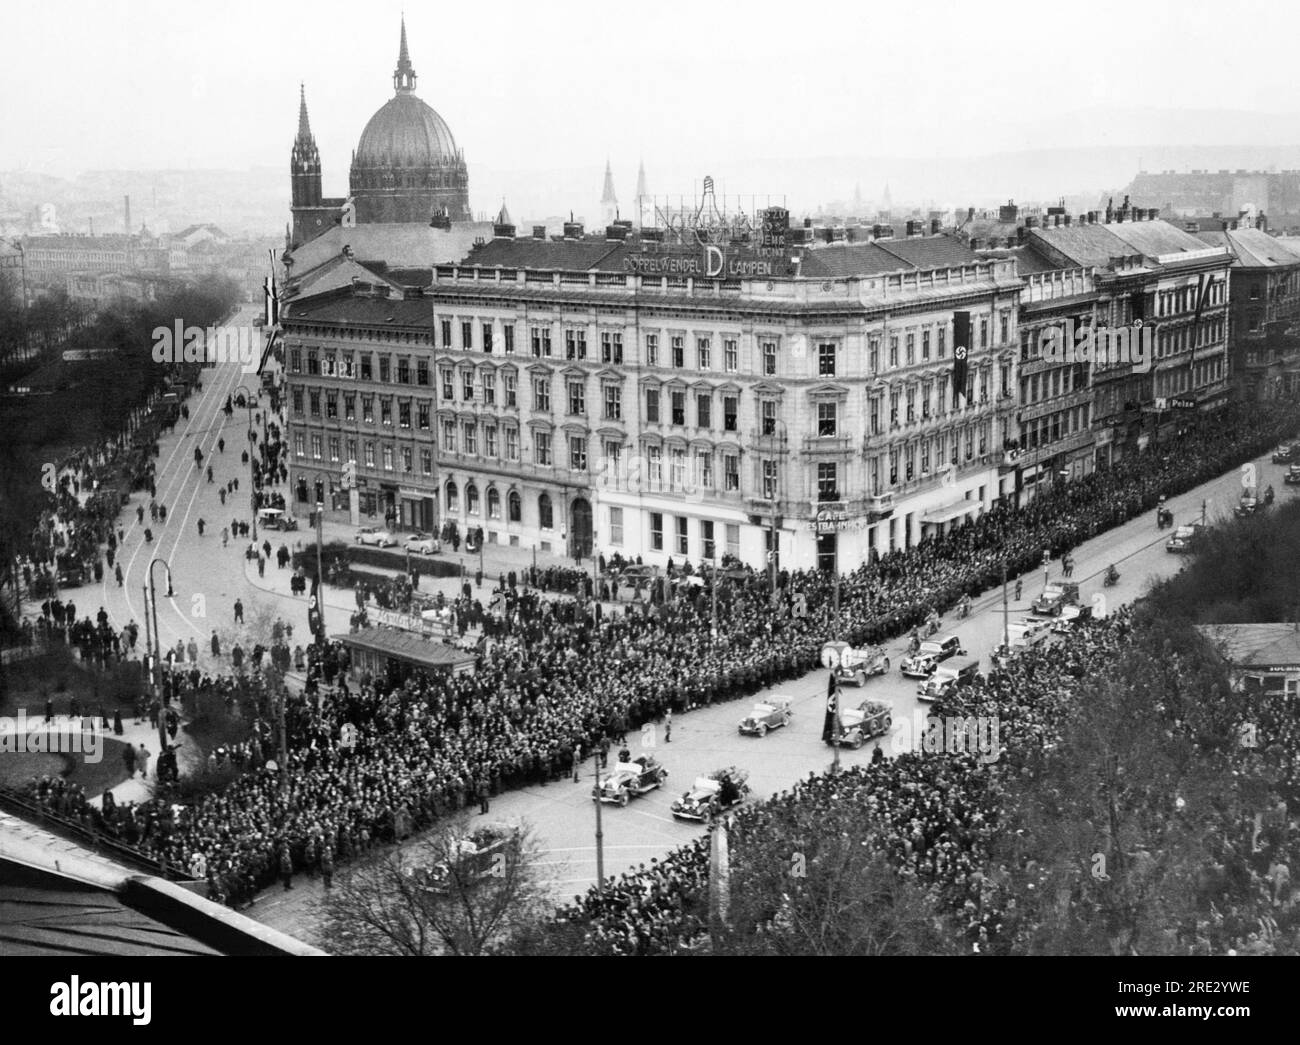 Vienna, Austria: 15 marzo 1938 l'ingresso trionfale di Hitler a Vienna. La sua auto è all'estrema sinistra dietro l'albero mentre una sfilata di altri veicoli lo segue. Foto Stock